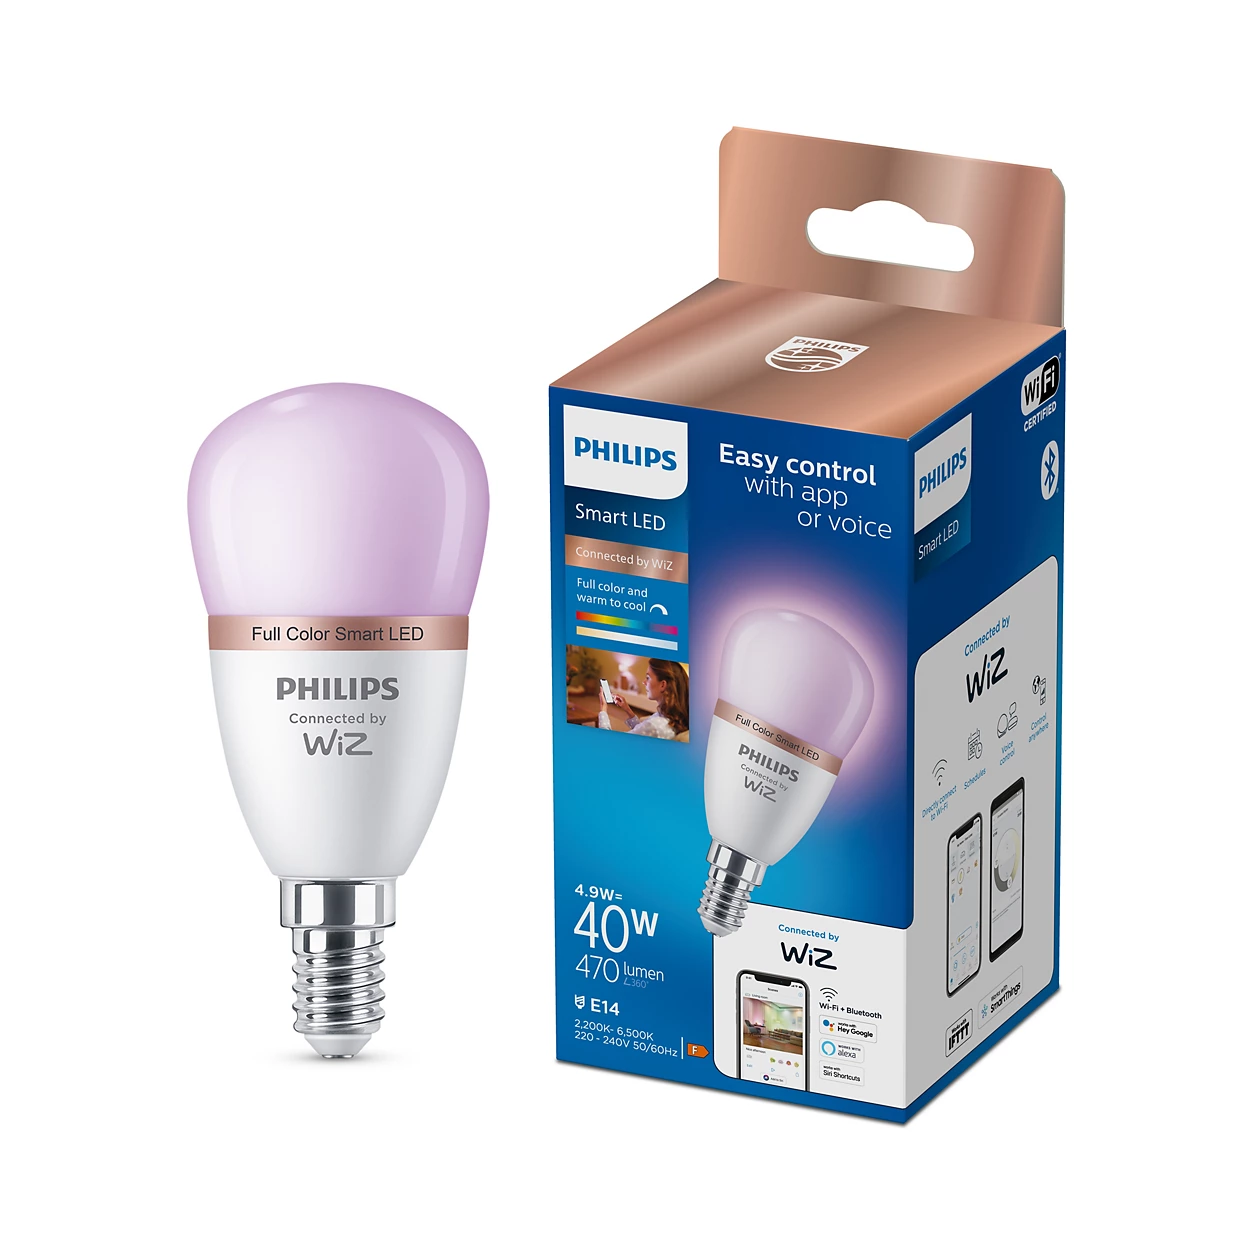 LED inteligente Bombilla 4,9 W (Equiv. 40 W) P45 E14 | Philips Wiz